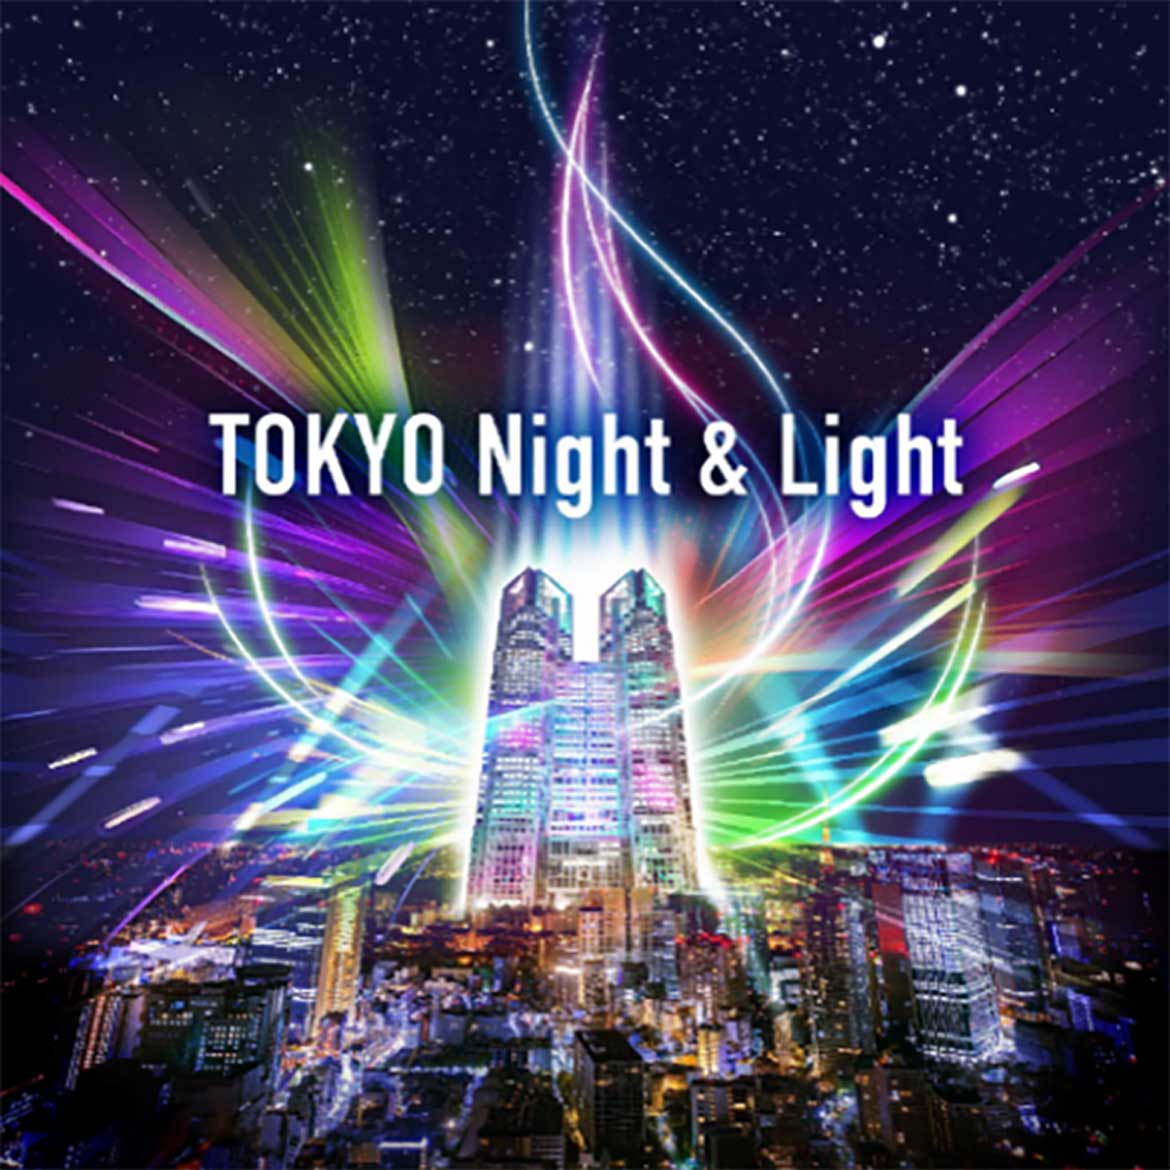 東京の夜を彩る！光と音で表現するプロジェクションマッピング「TOKYO Night & Light 」始動